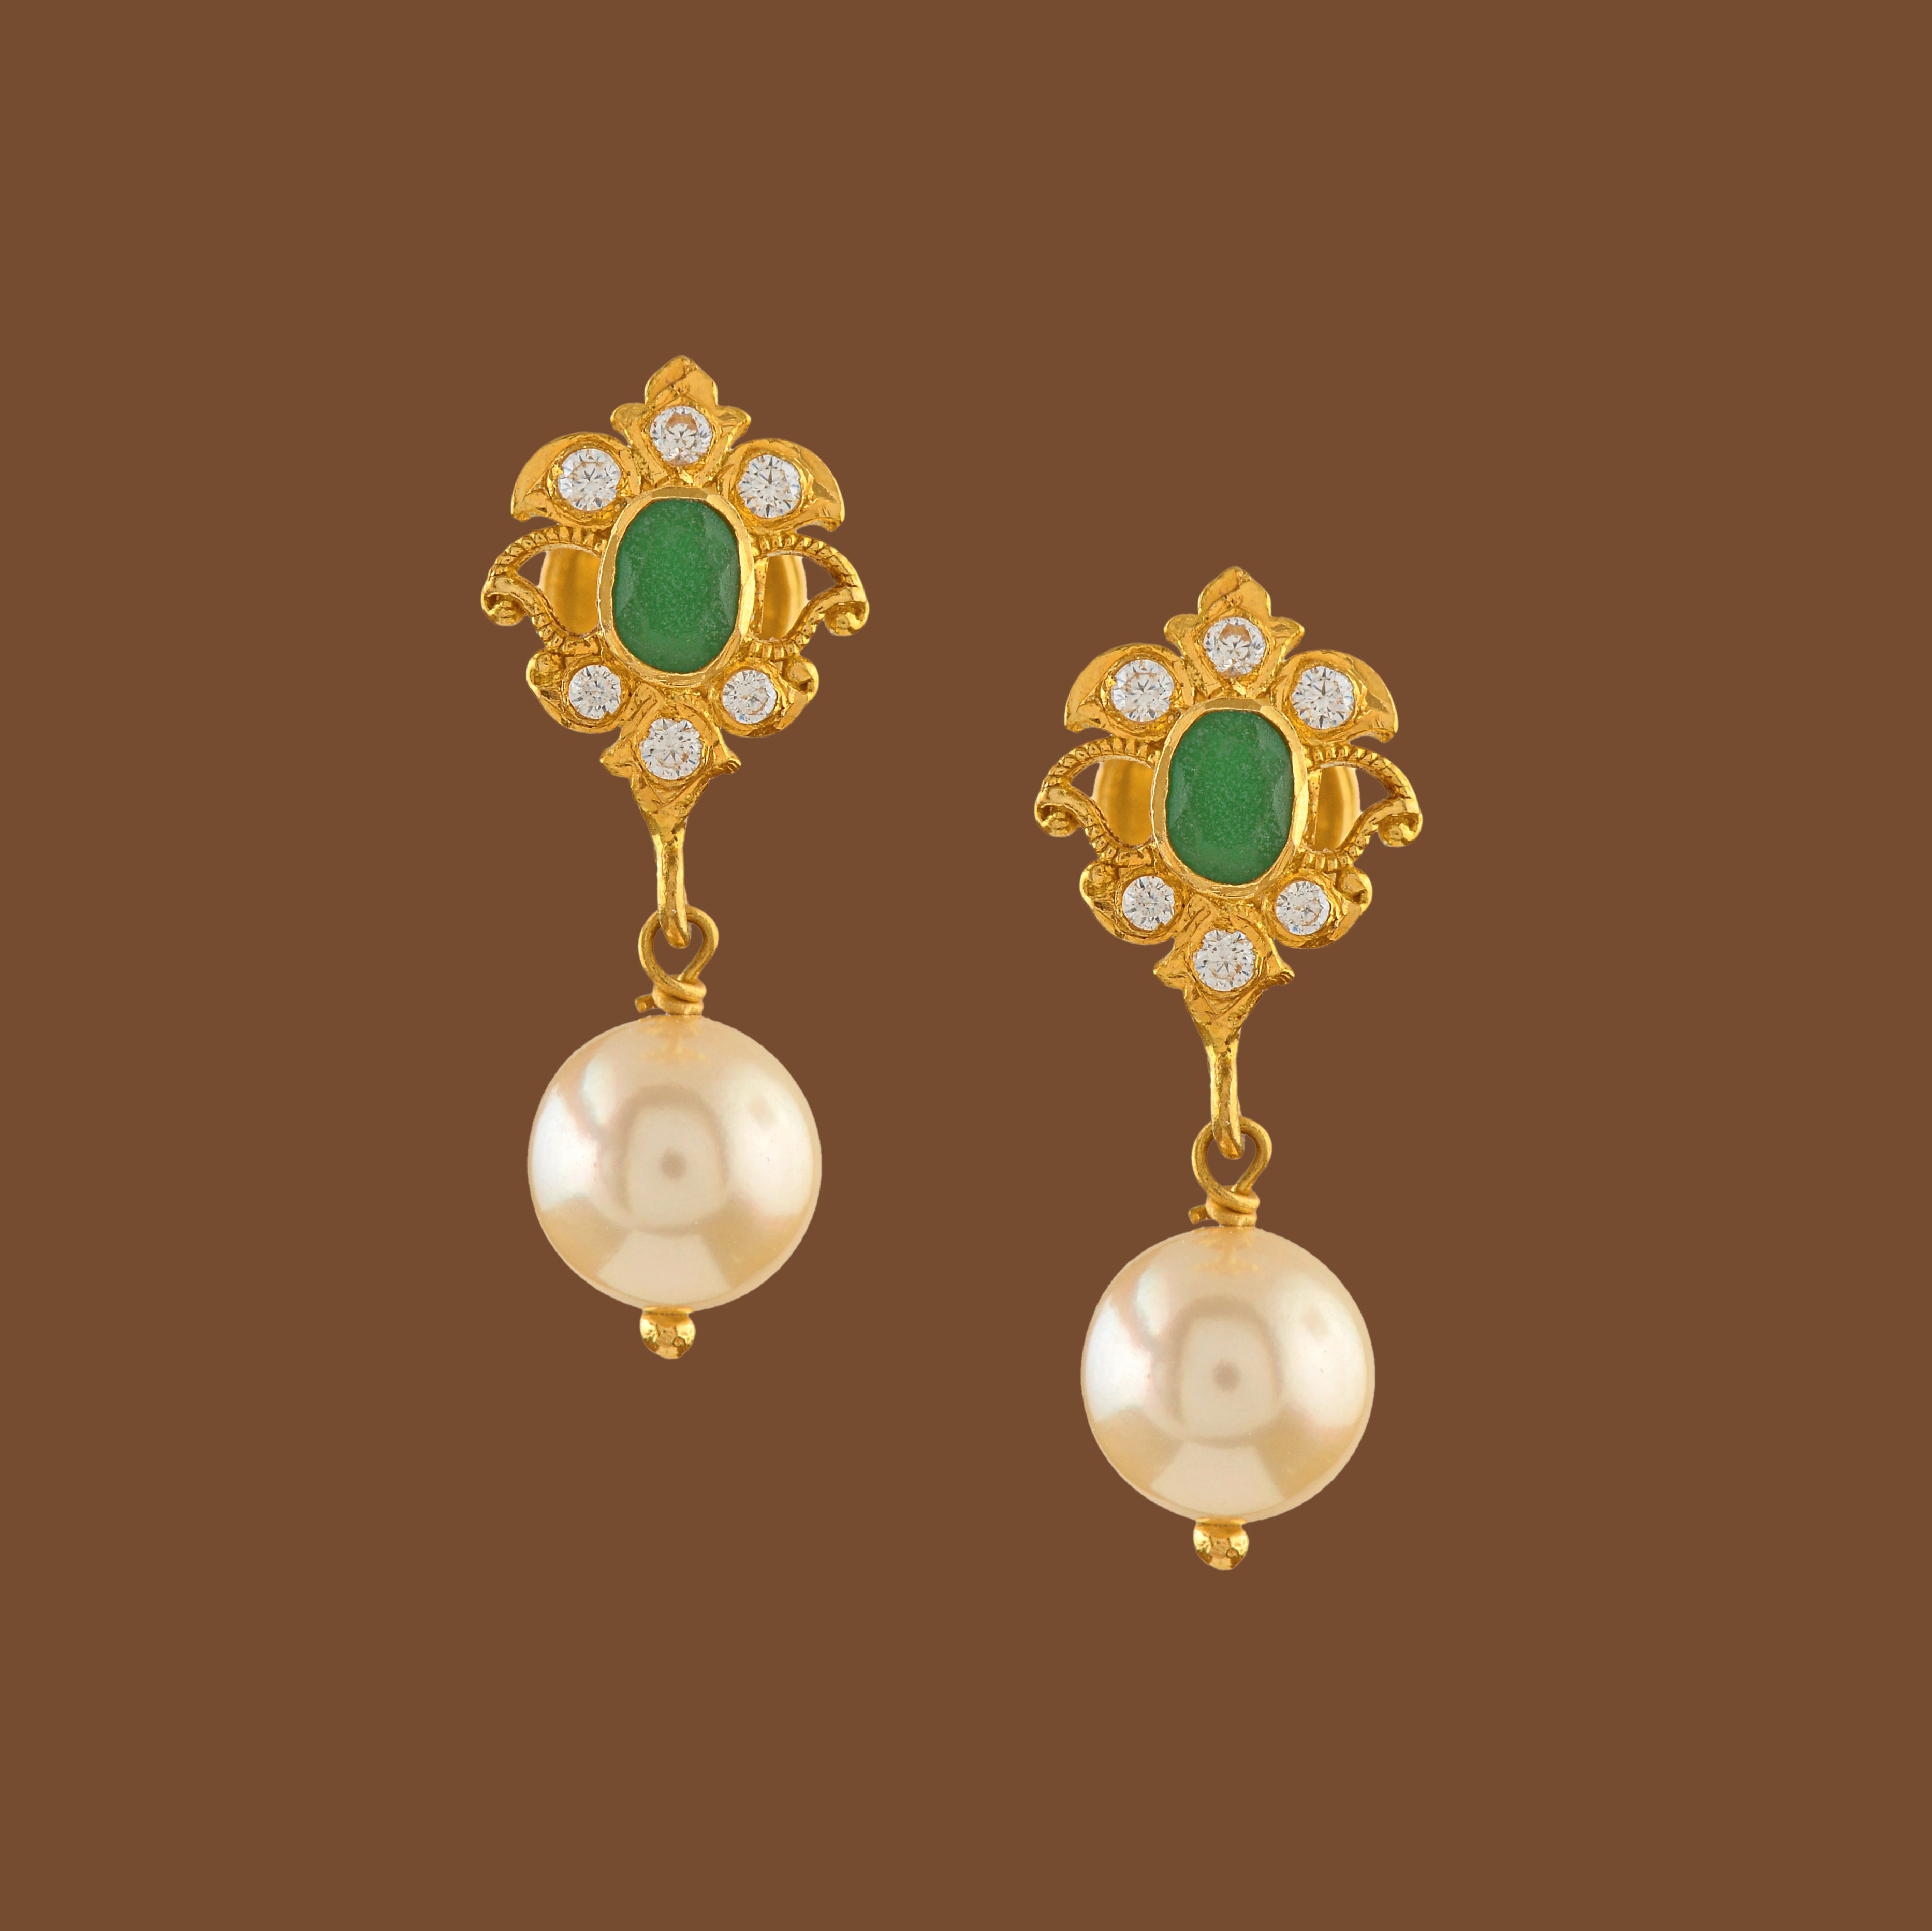 Gold earrings | Gold earring design for women | Gold hanging earrings